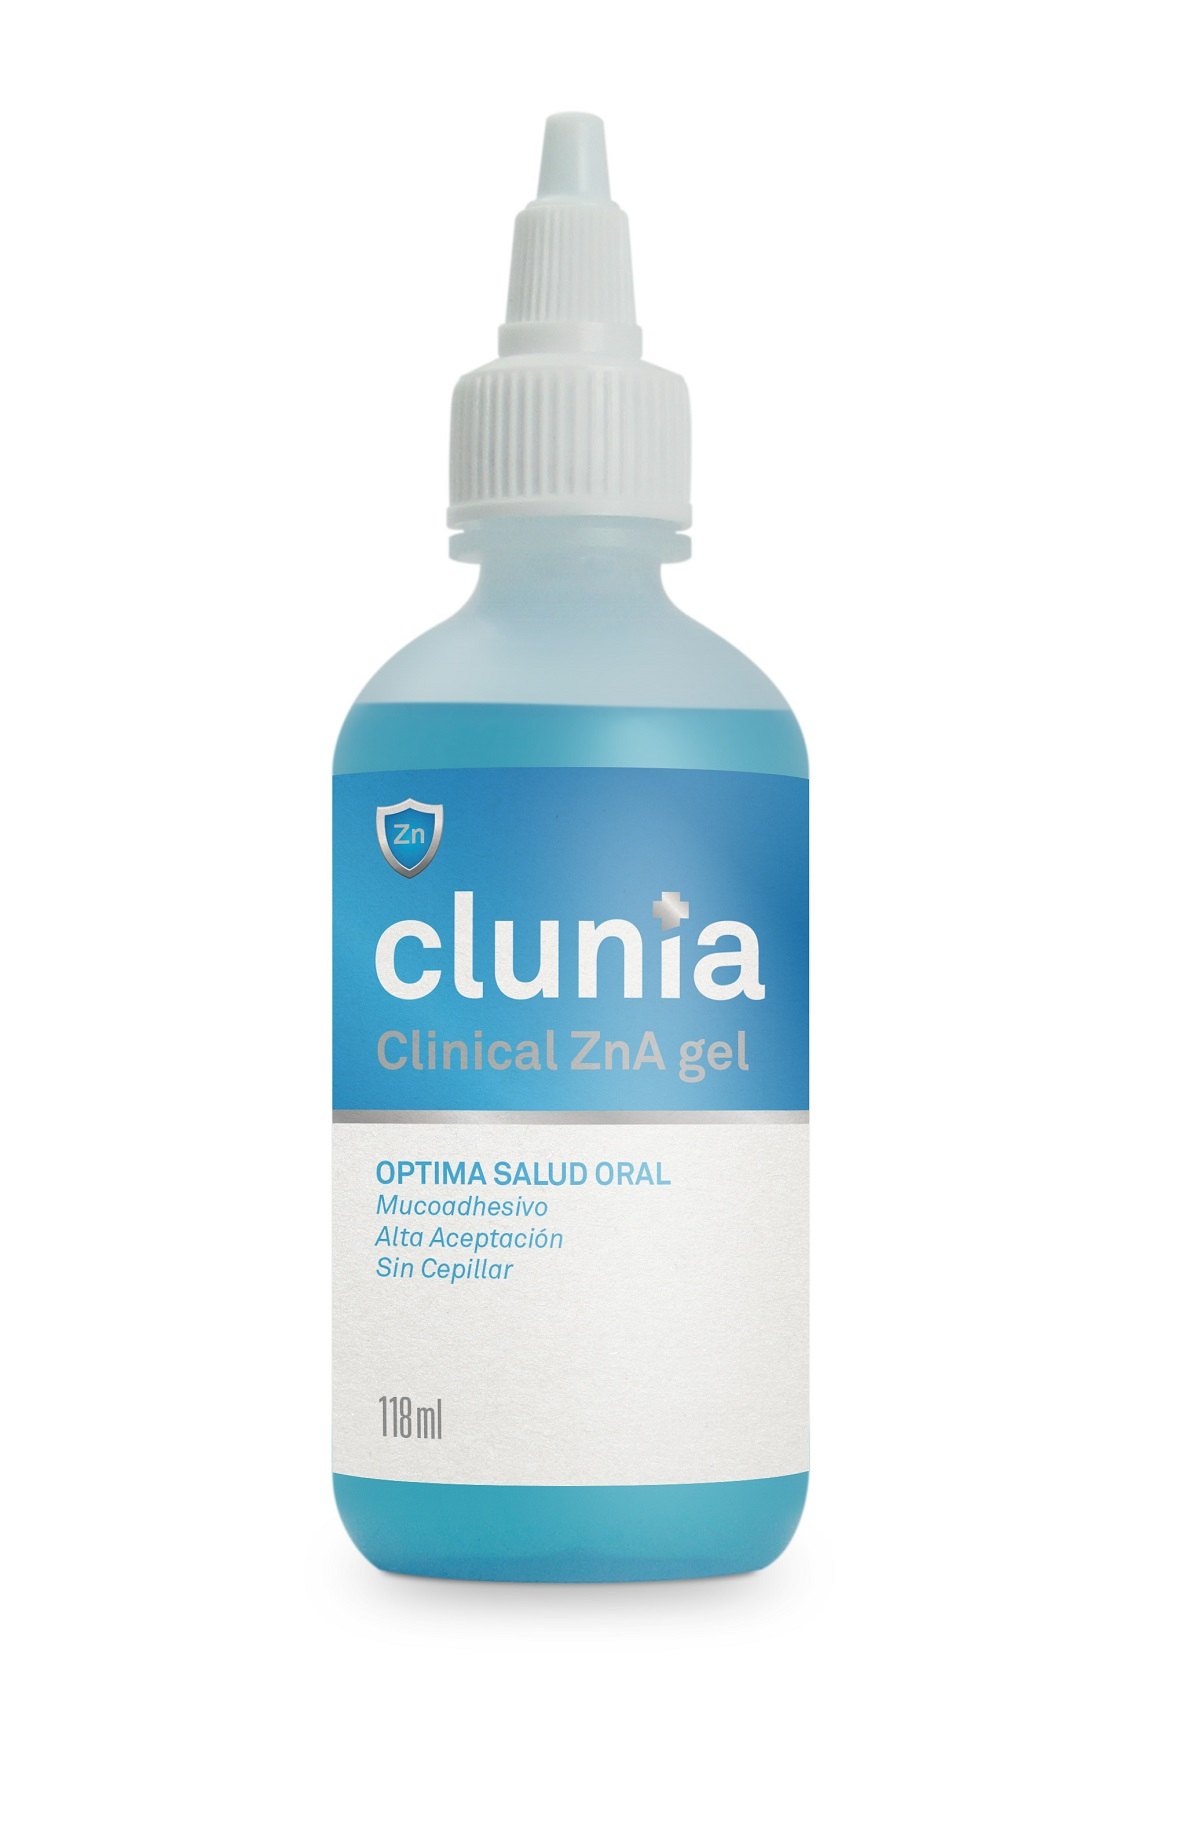 CLUNIA Zn-A Clinical Gel para cães, gatos, cavalos e outros animais